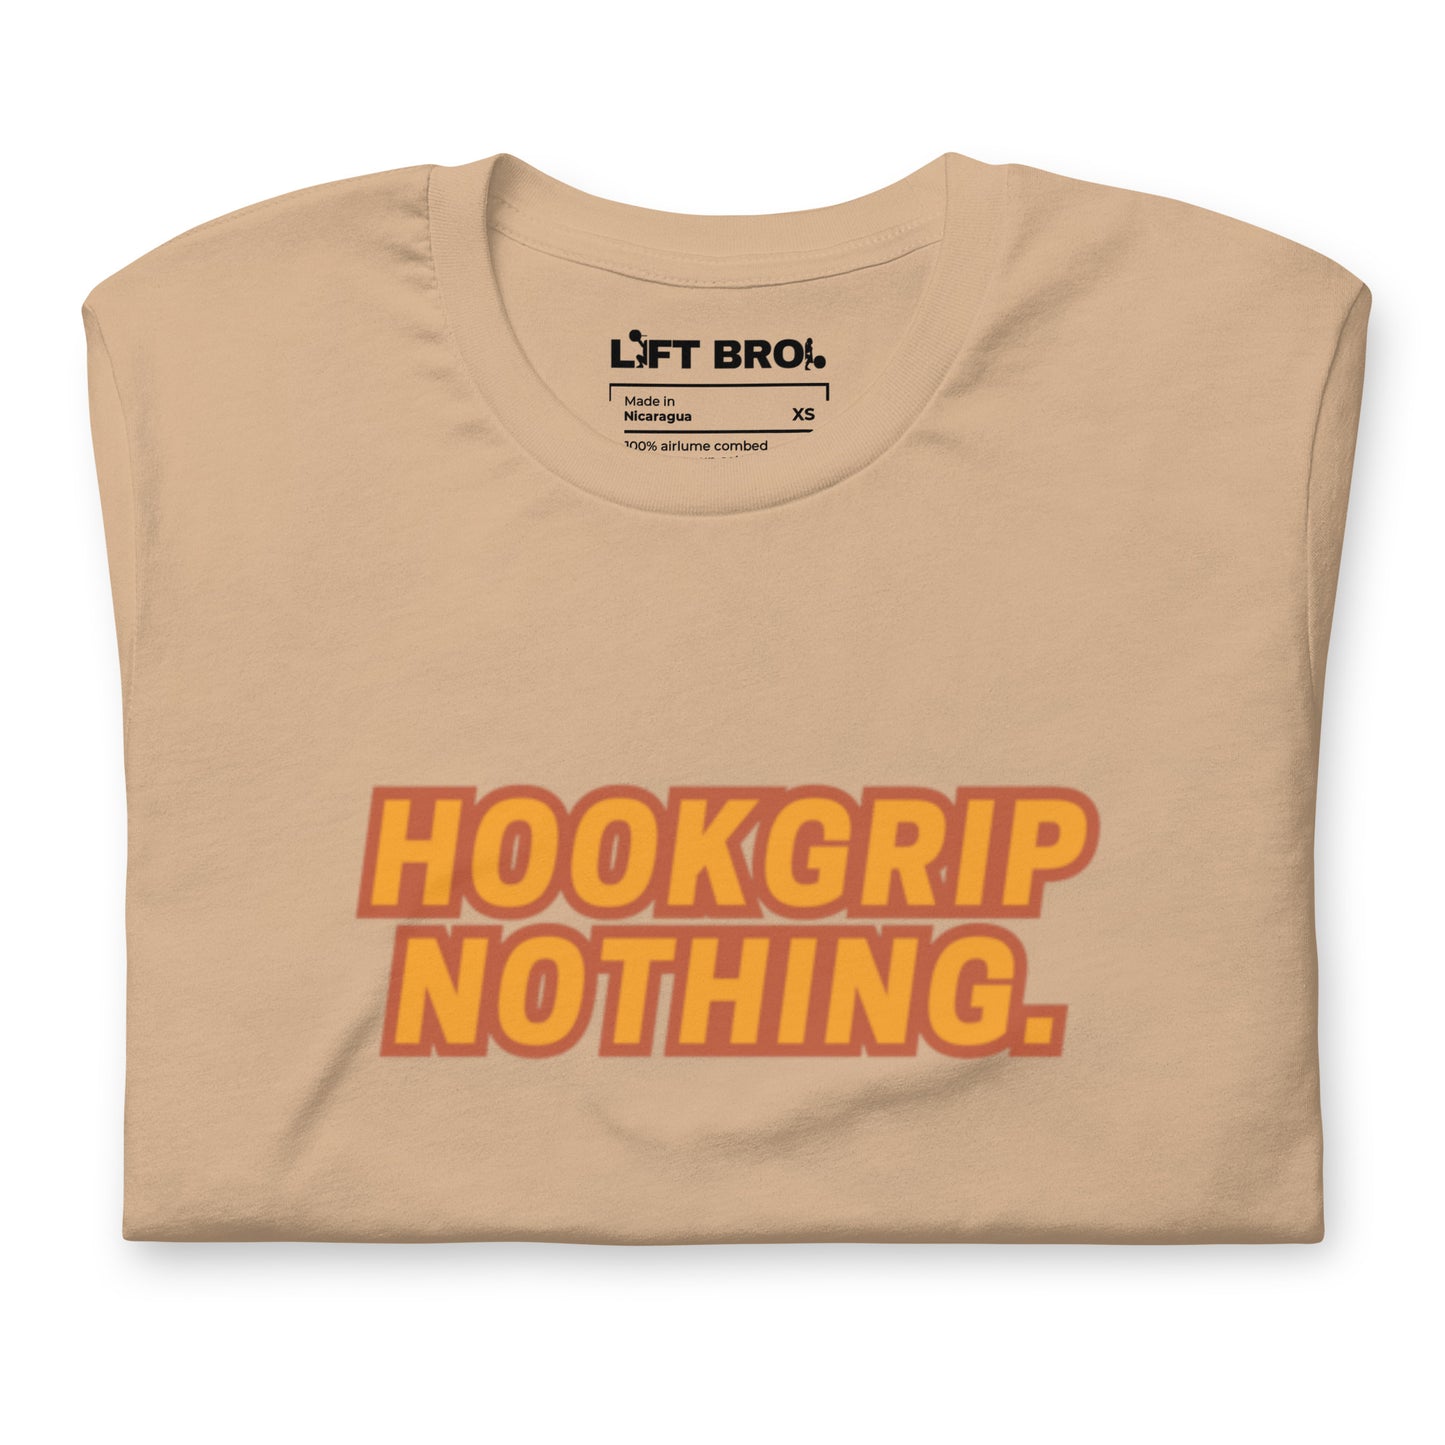 Hookgrip Nothing. Shirt